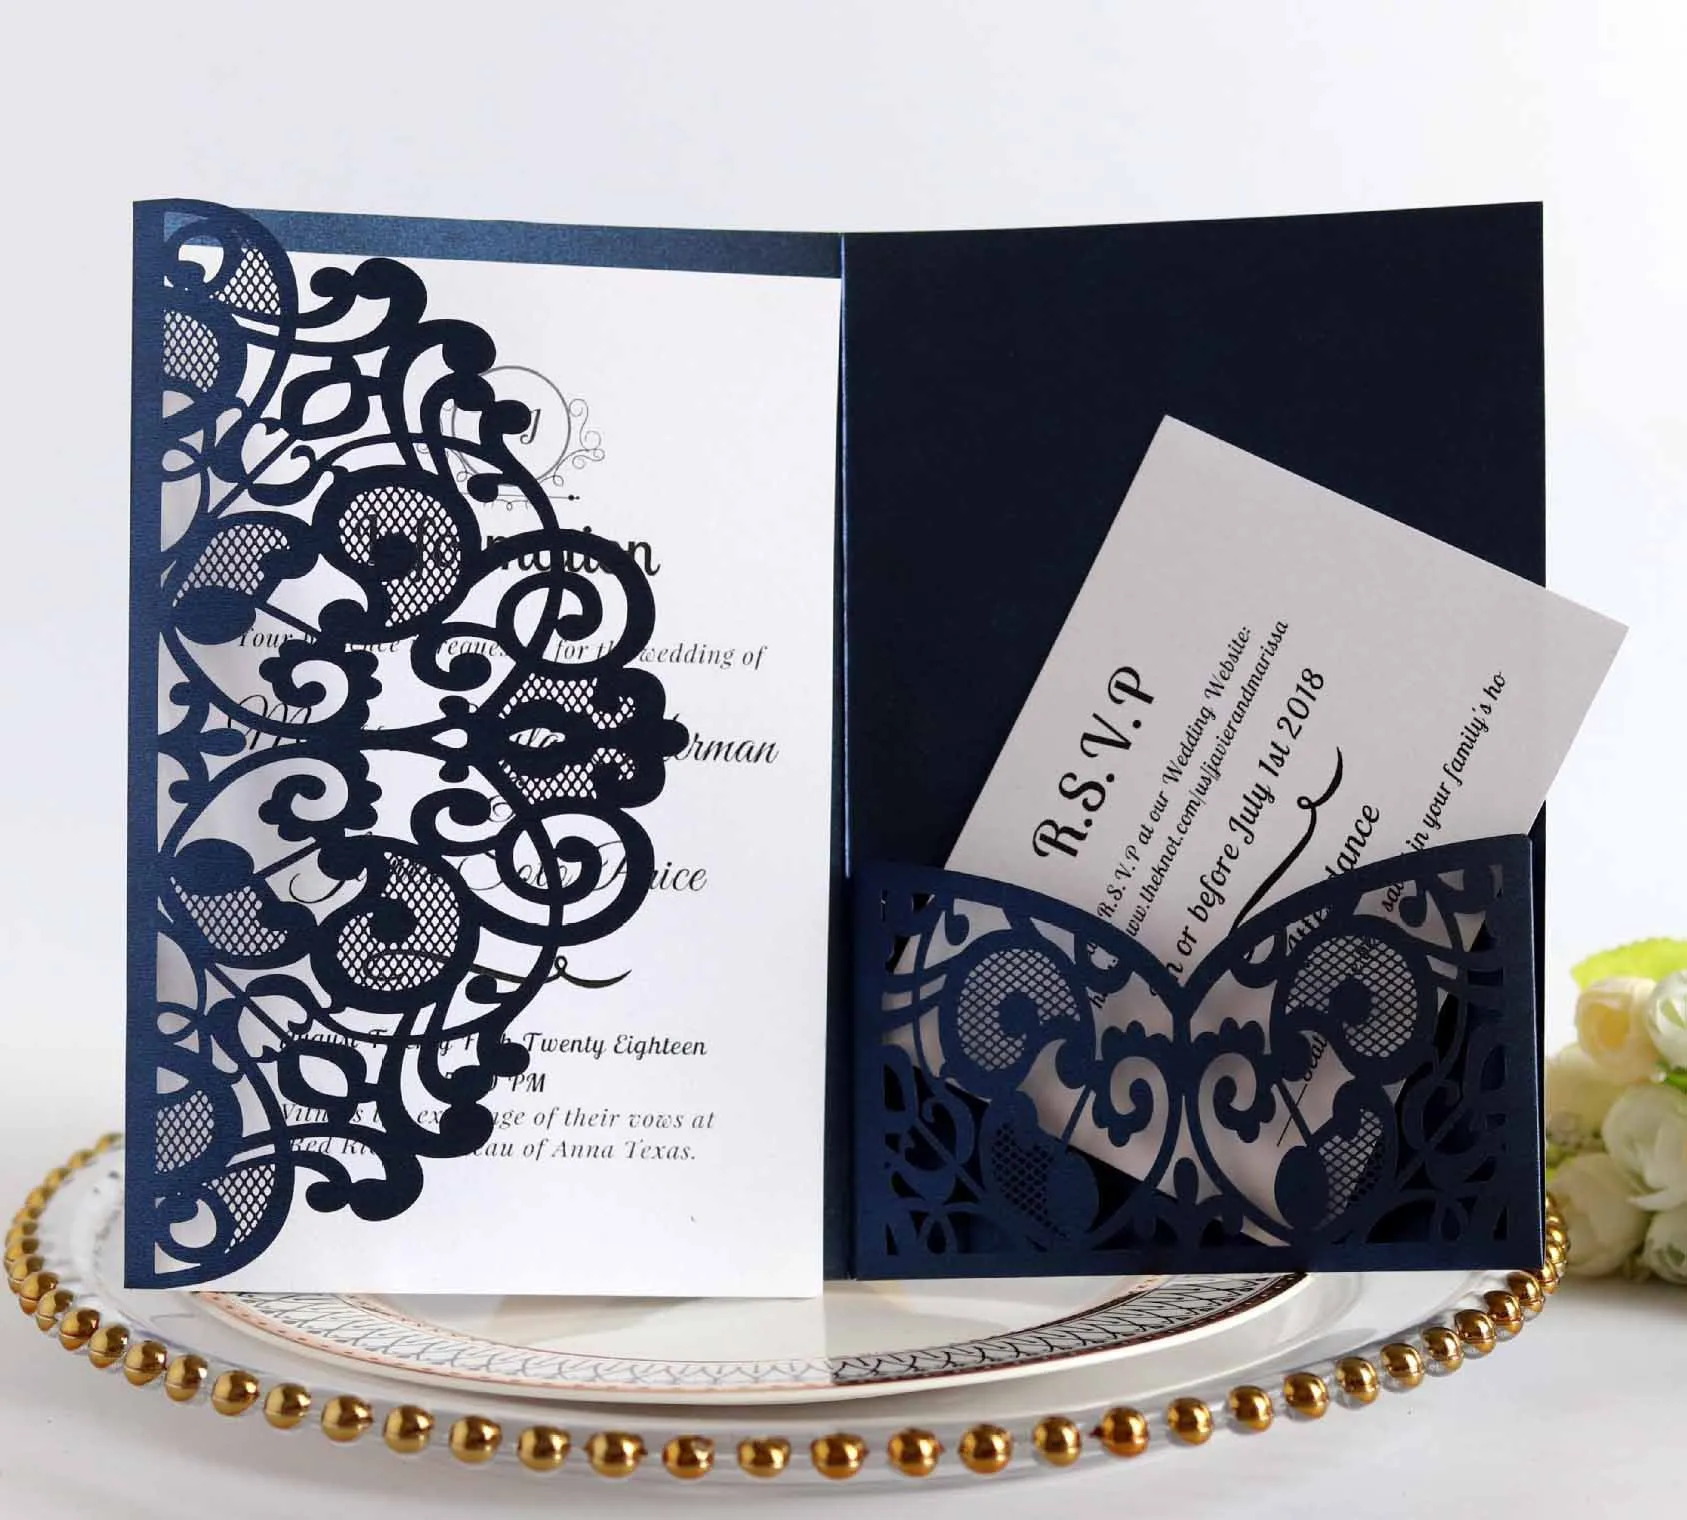 Cartes d'invitation de mariage élégantes découpées au Laser carte de voeux personnaliser anniversaire d'affaires avec des cartes RSVP décor fournitures de fête